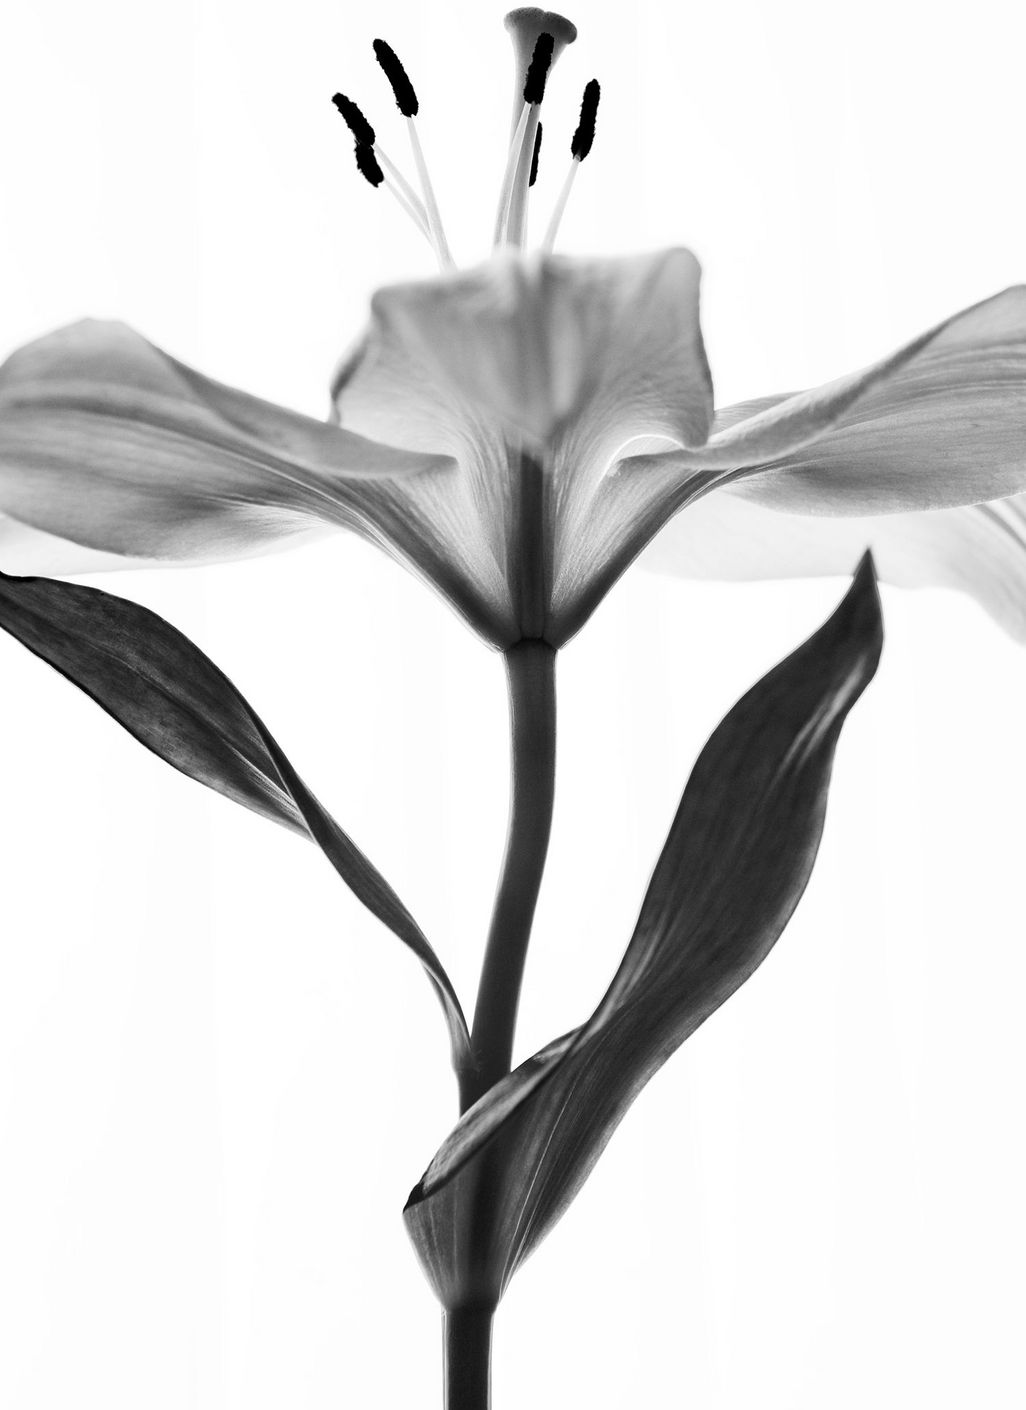 Meisterhaft in Schwarz- Weiß fotografieren